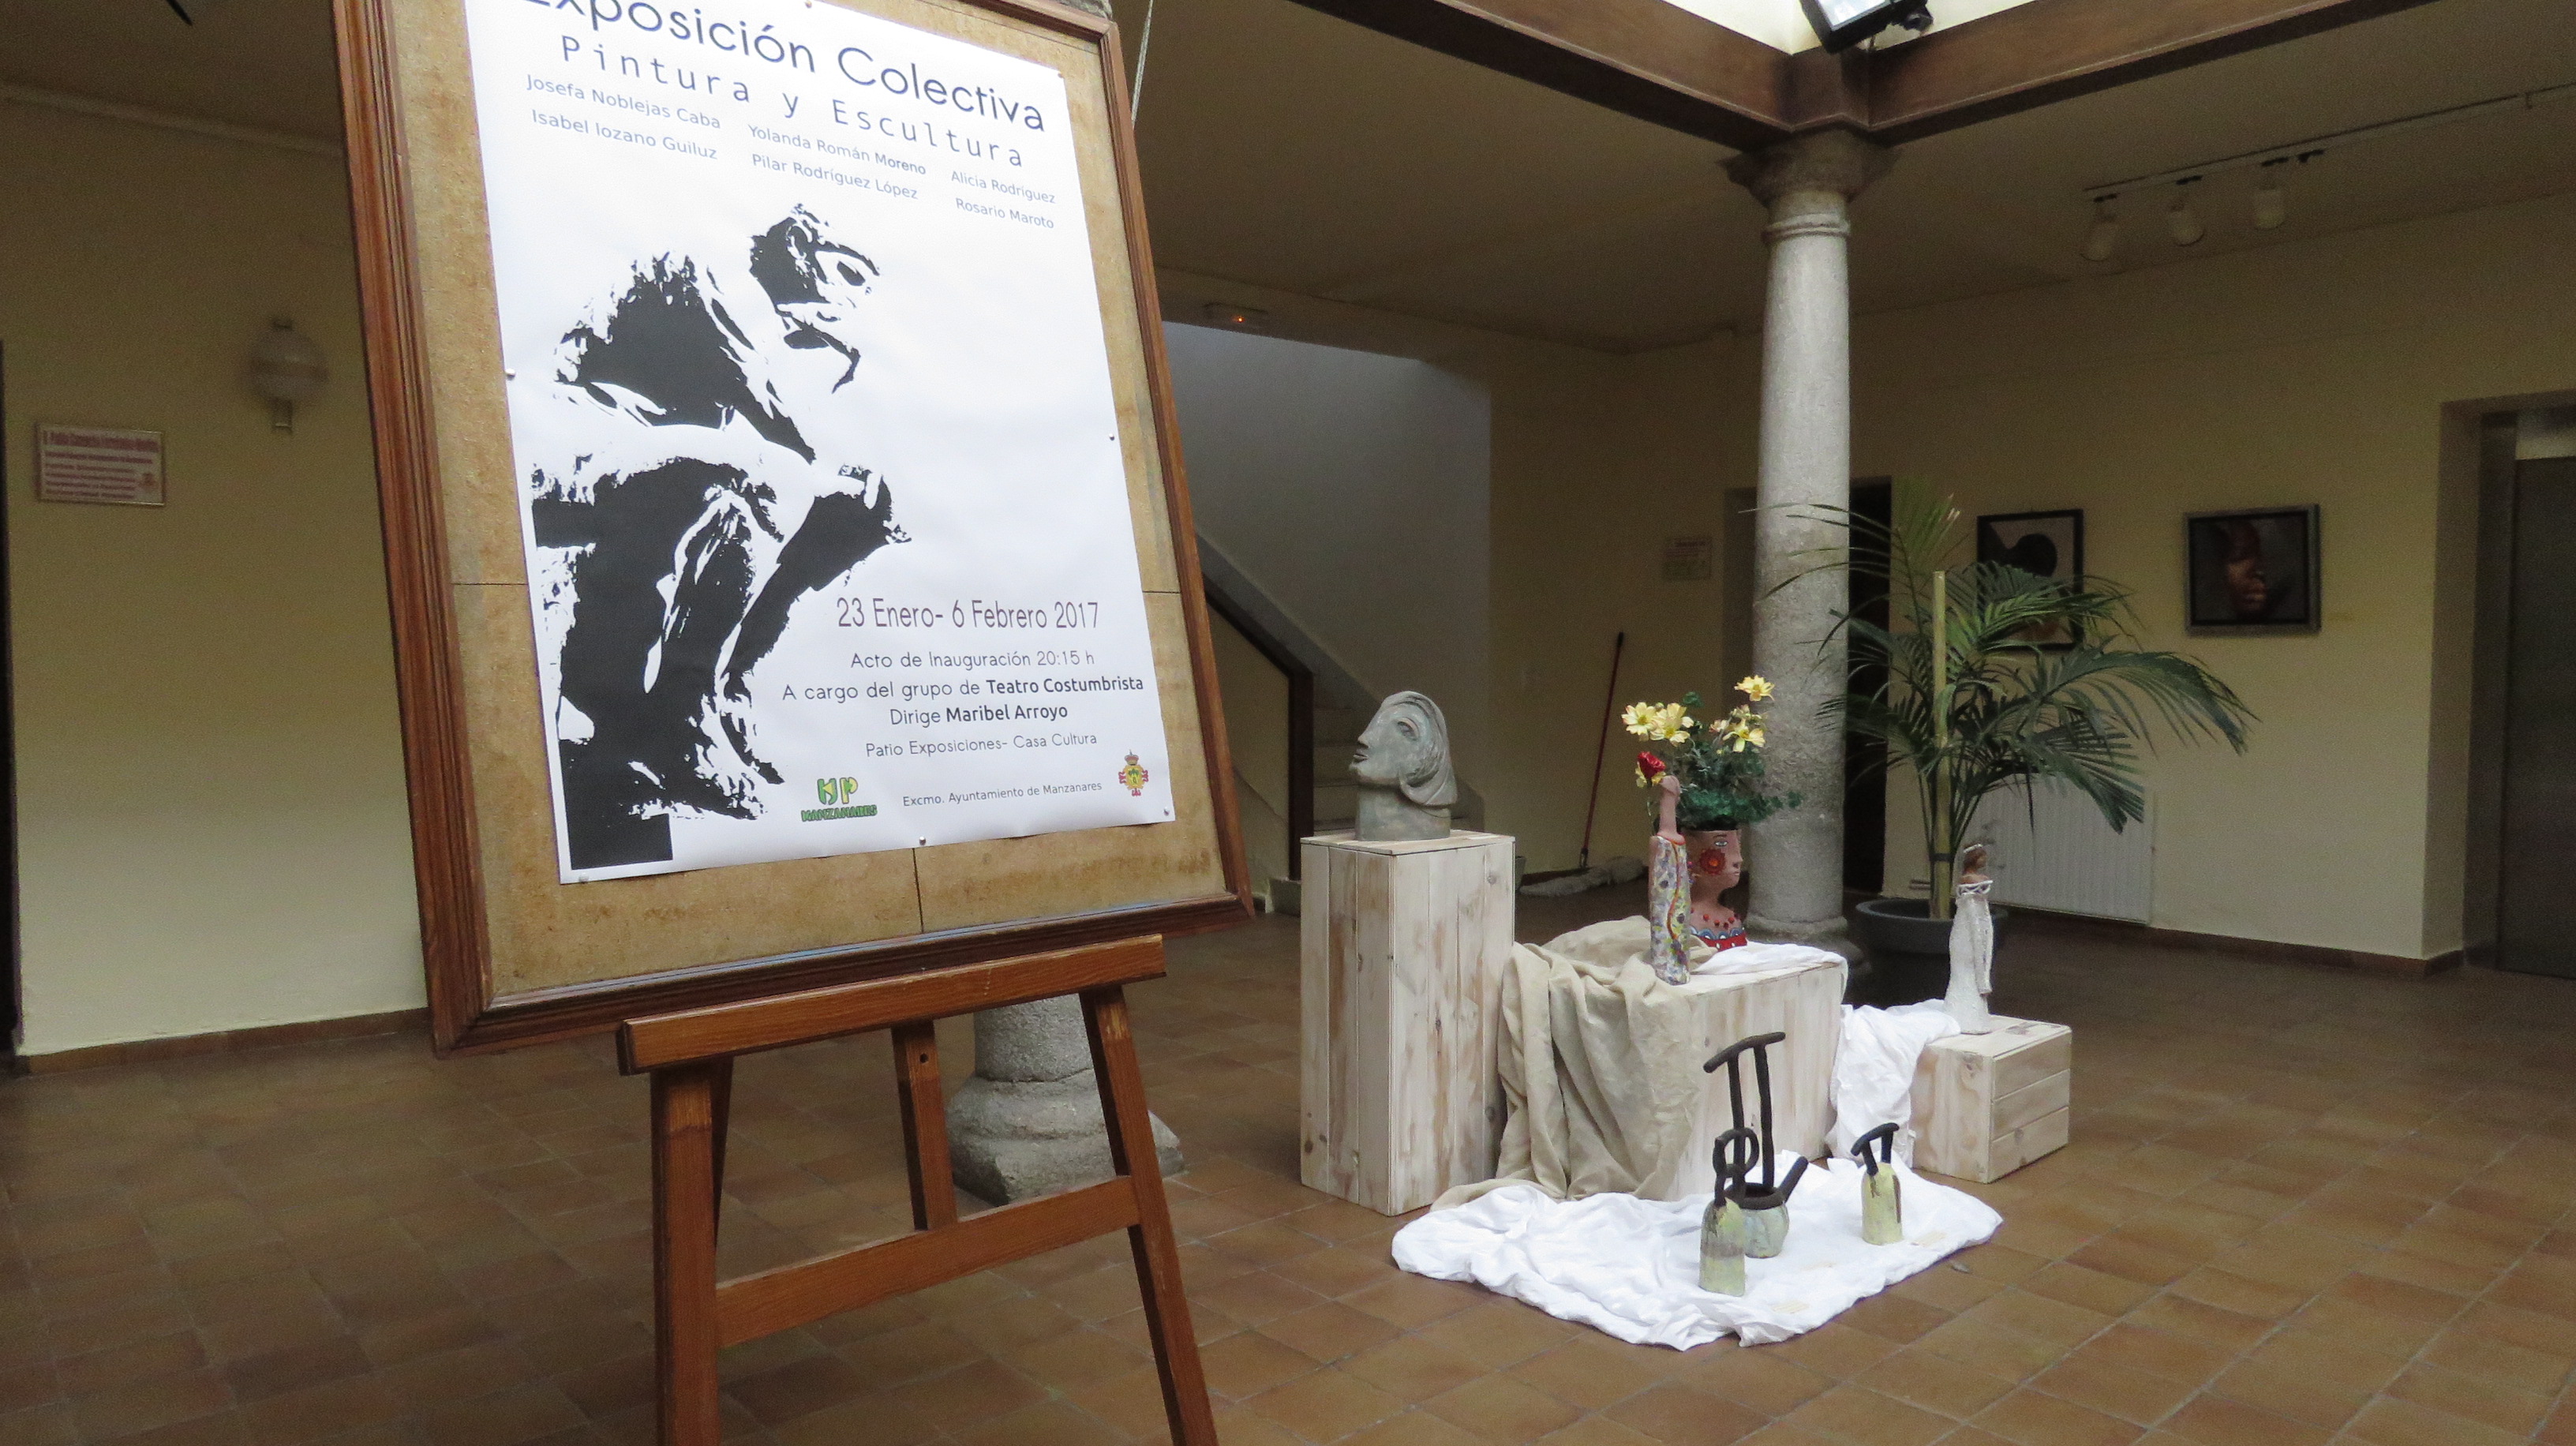 Exposición Temporal de alumnas del curso de pintura y escultura de la UP Manzanares